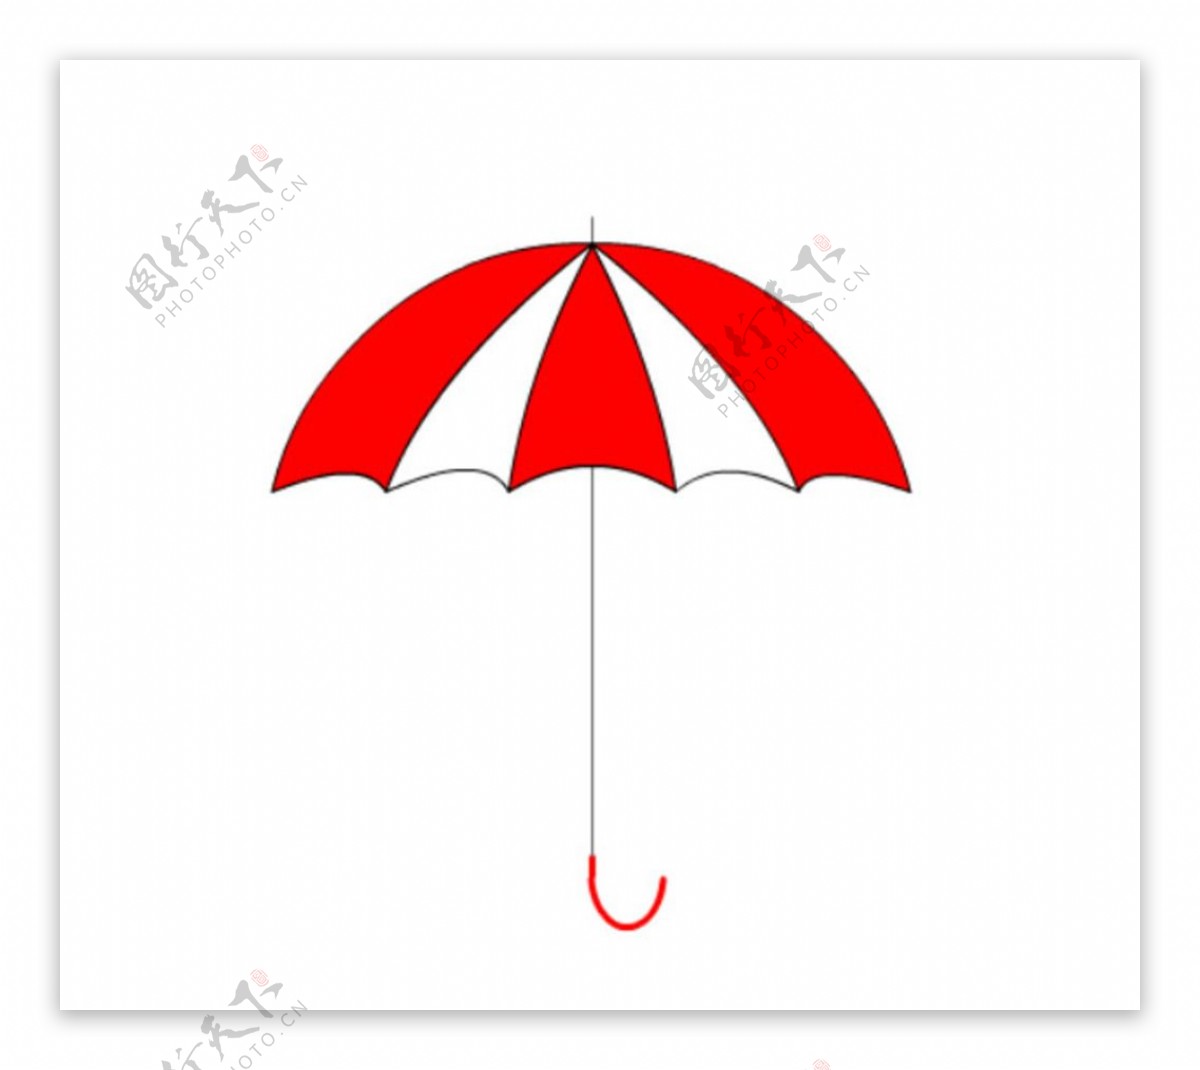 雨伞图形动画